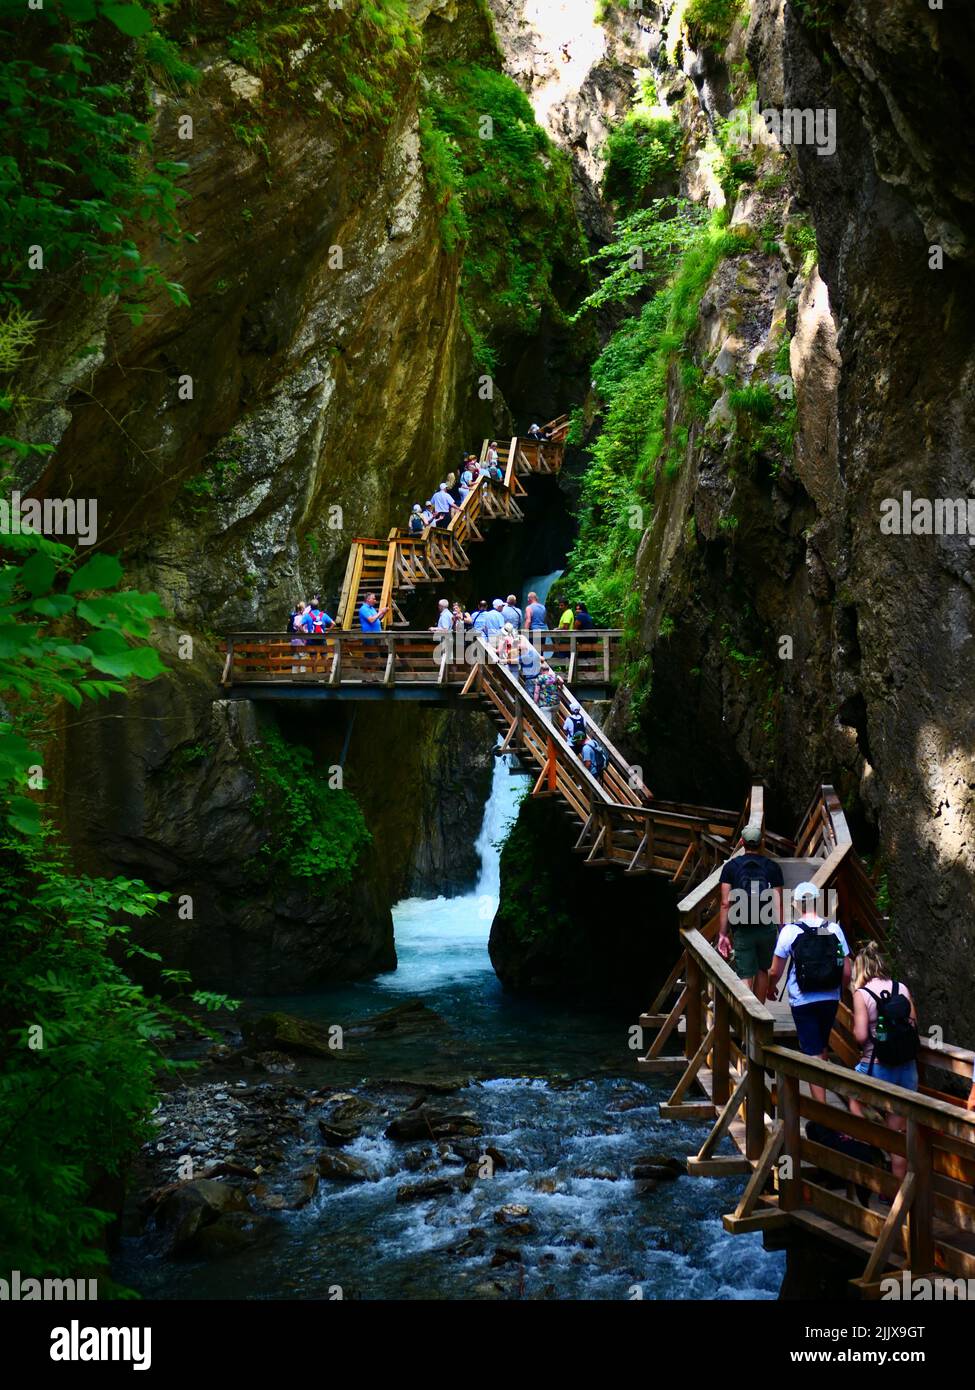 Tourists walking visiting on wooden stairway steps, Sigmund Thun Klamm Gorge, Austria Stock Photo